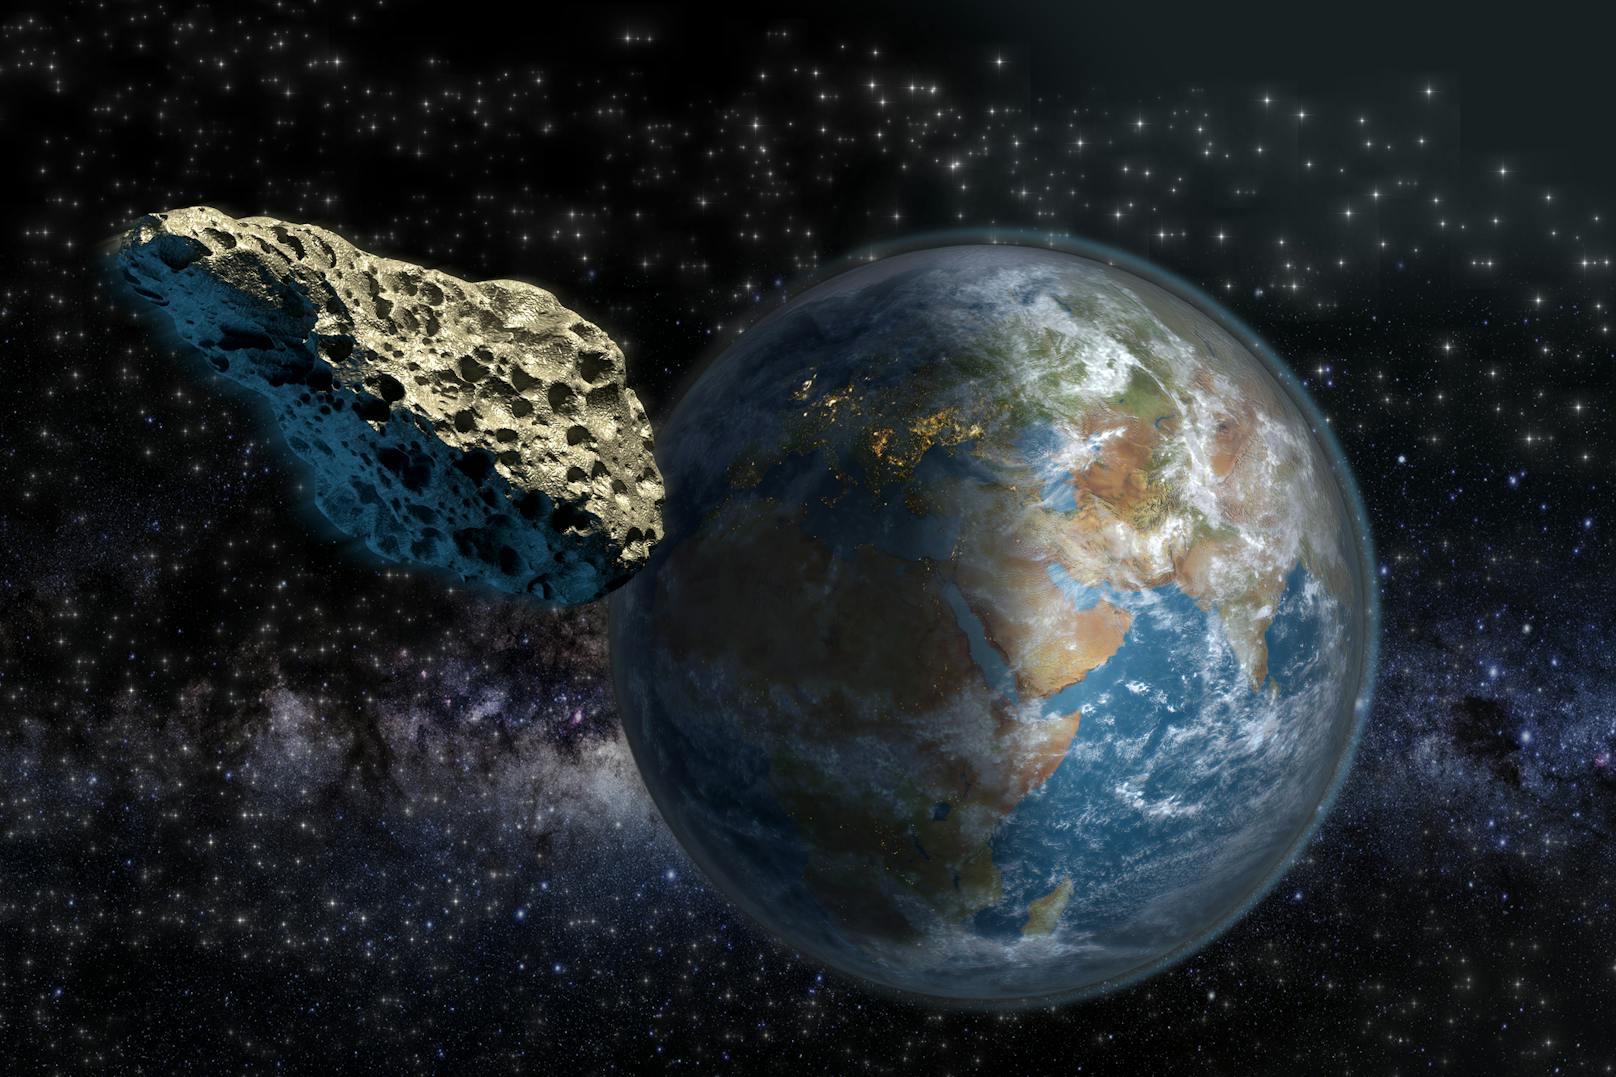 Ein Asteroid raste mit einer Geschwindigkeit von 12,4 Kilometern pro Sekunde unentdeckt an der Erde vorbei.